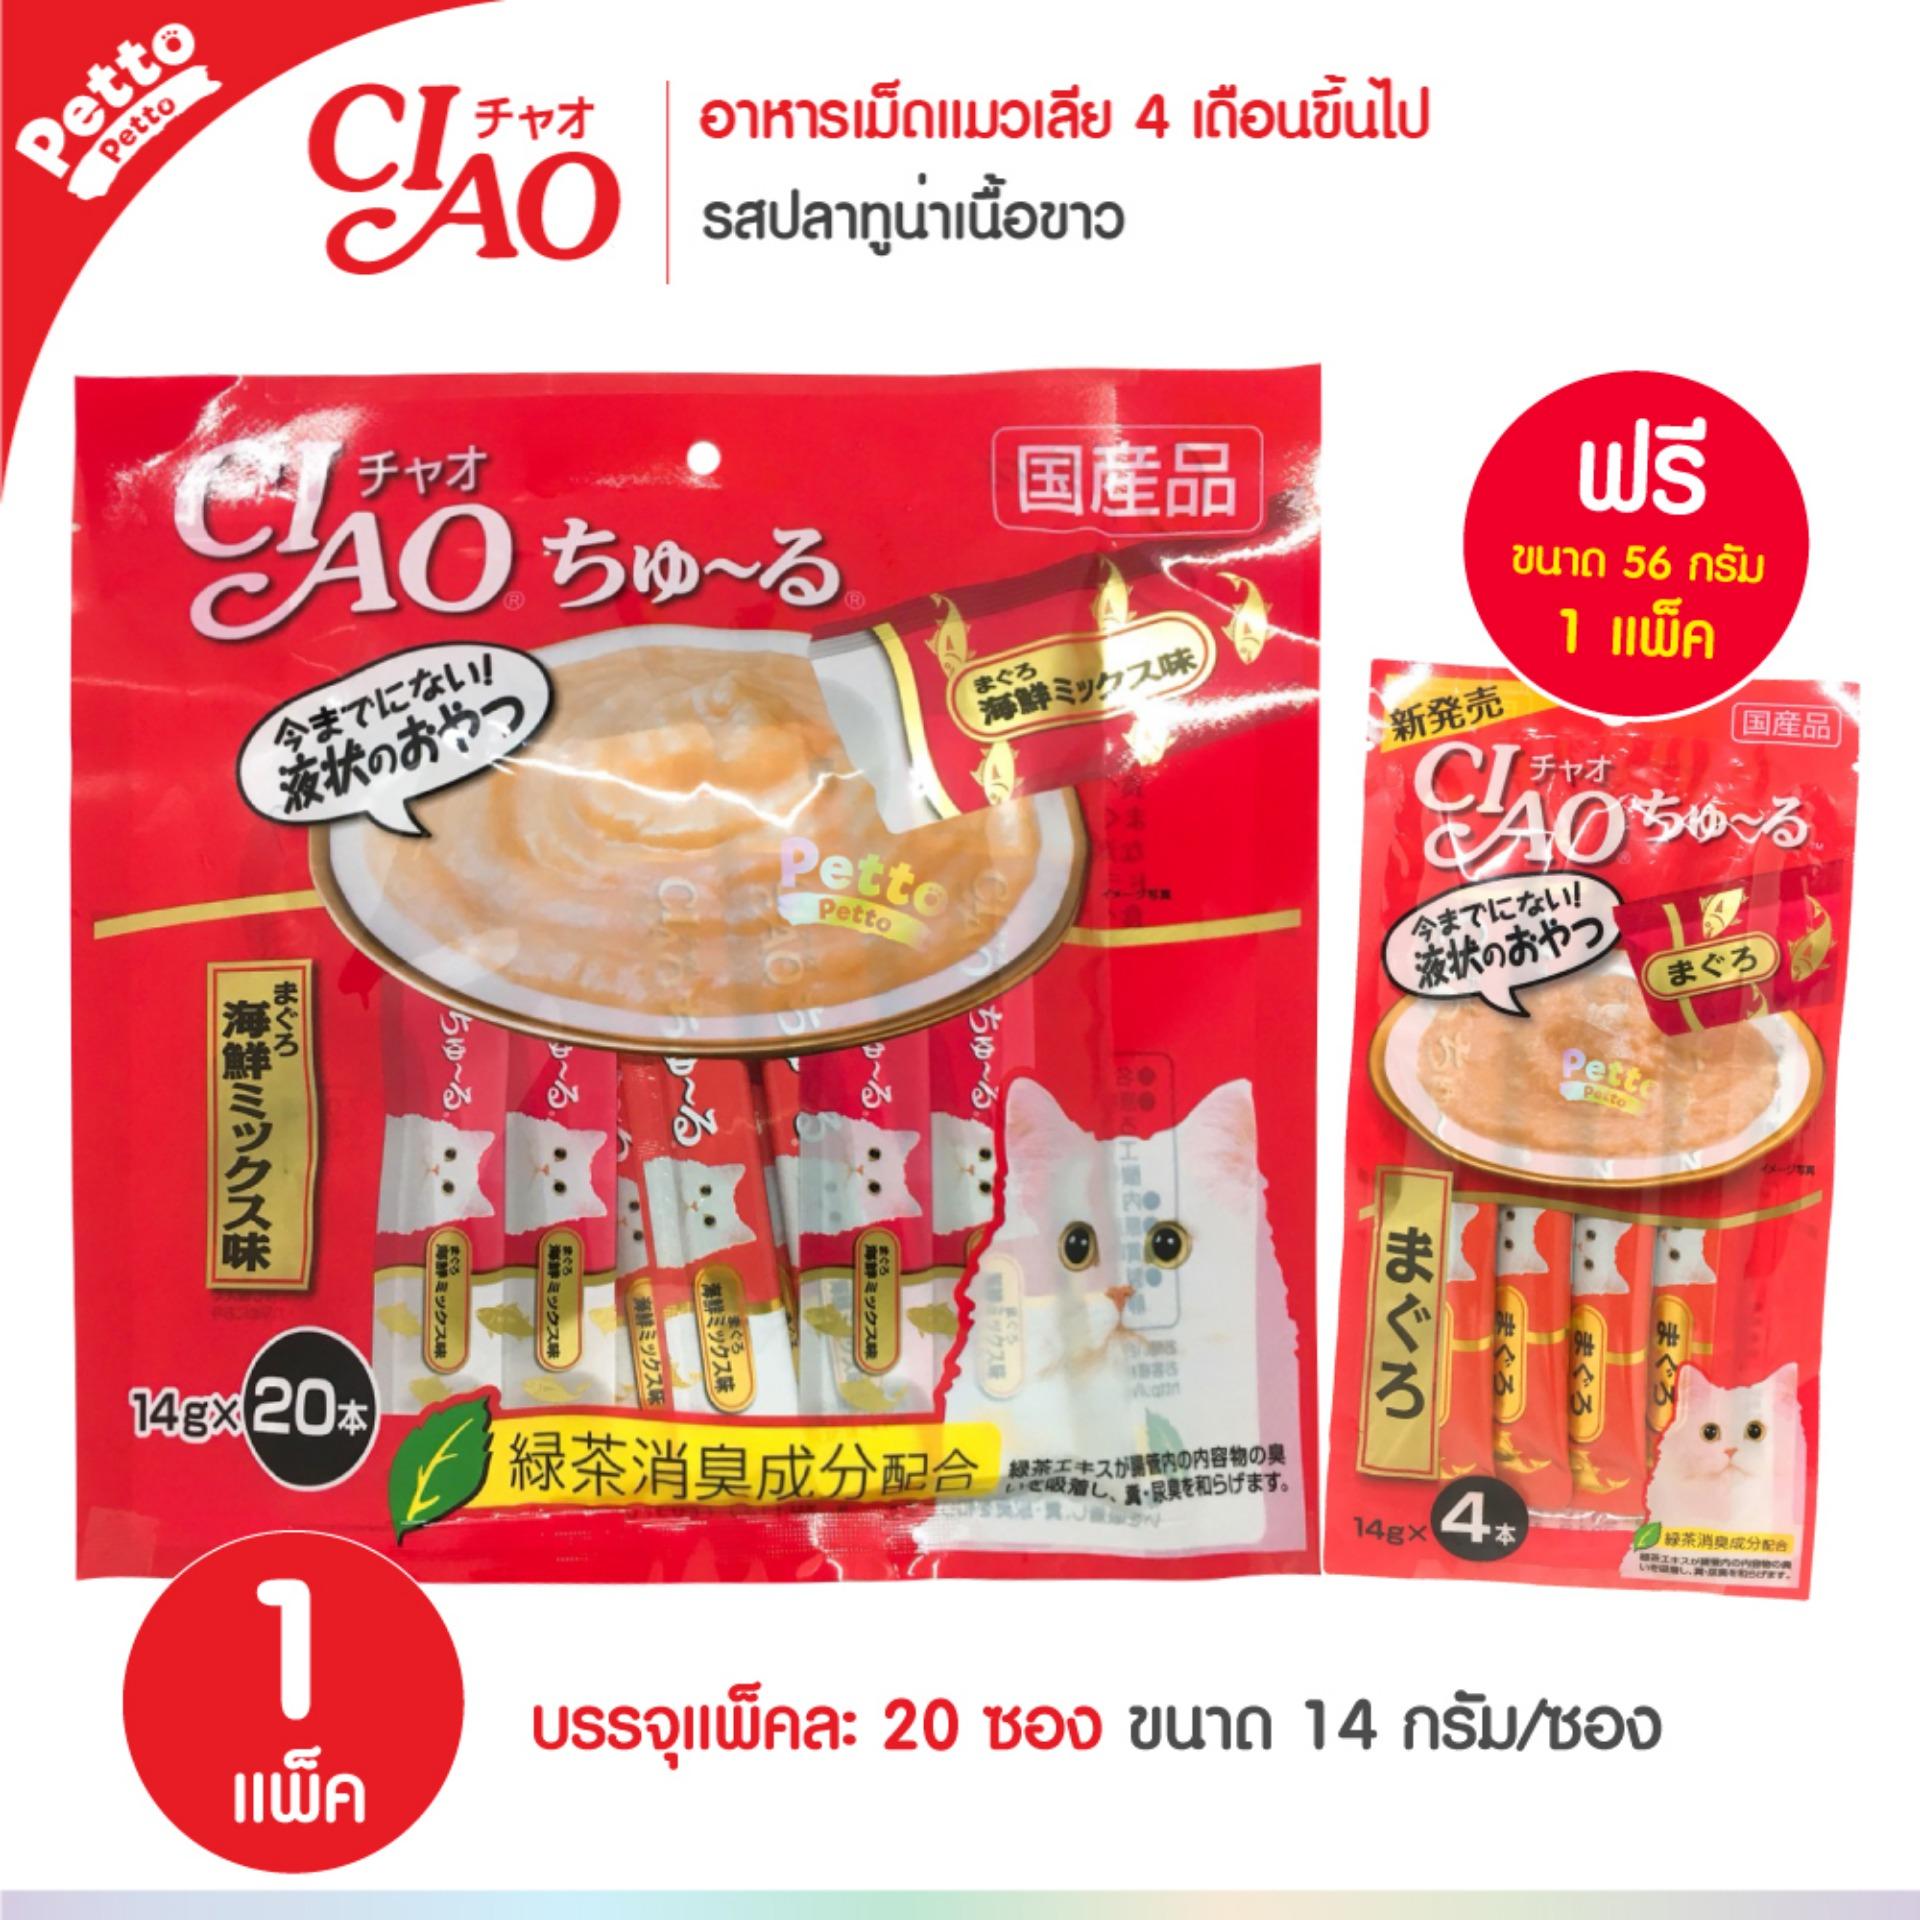 CIAO Churu White Meat Tuna ขนมแมวเลีย สูตรปลาทูน่าเนื้อขาว (14g x 20 ซอง) ฟรี! ขนมแมวเลีย 4 ซอง - 1 Unit